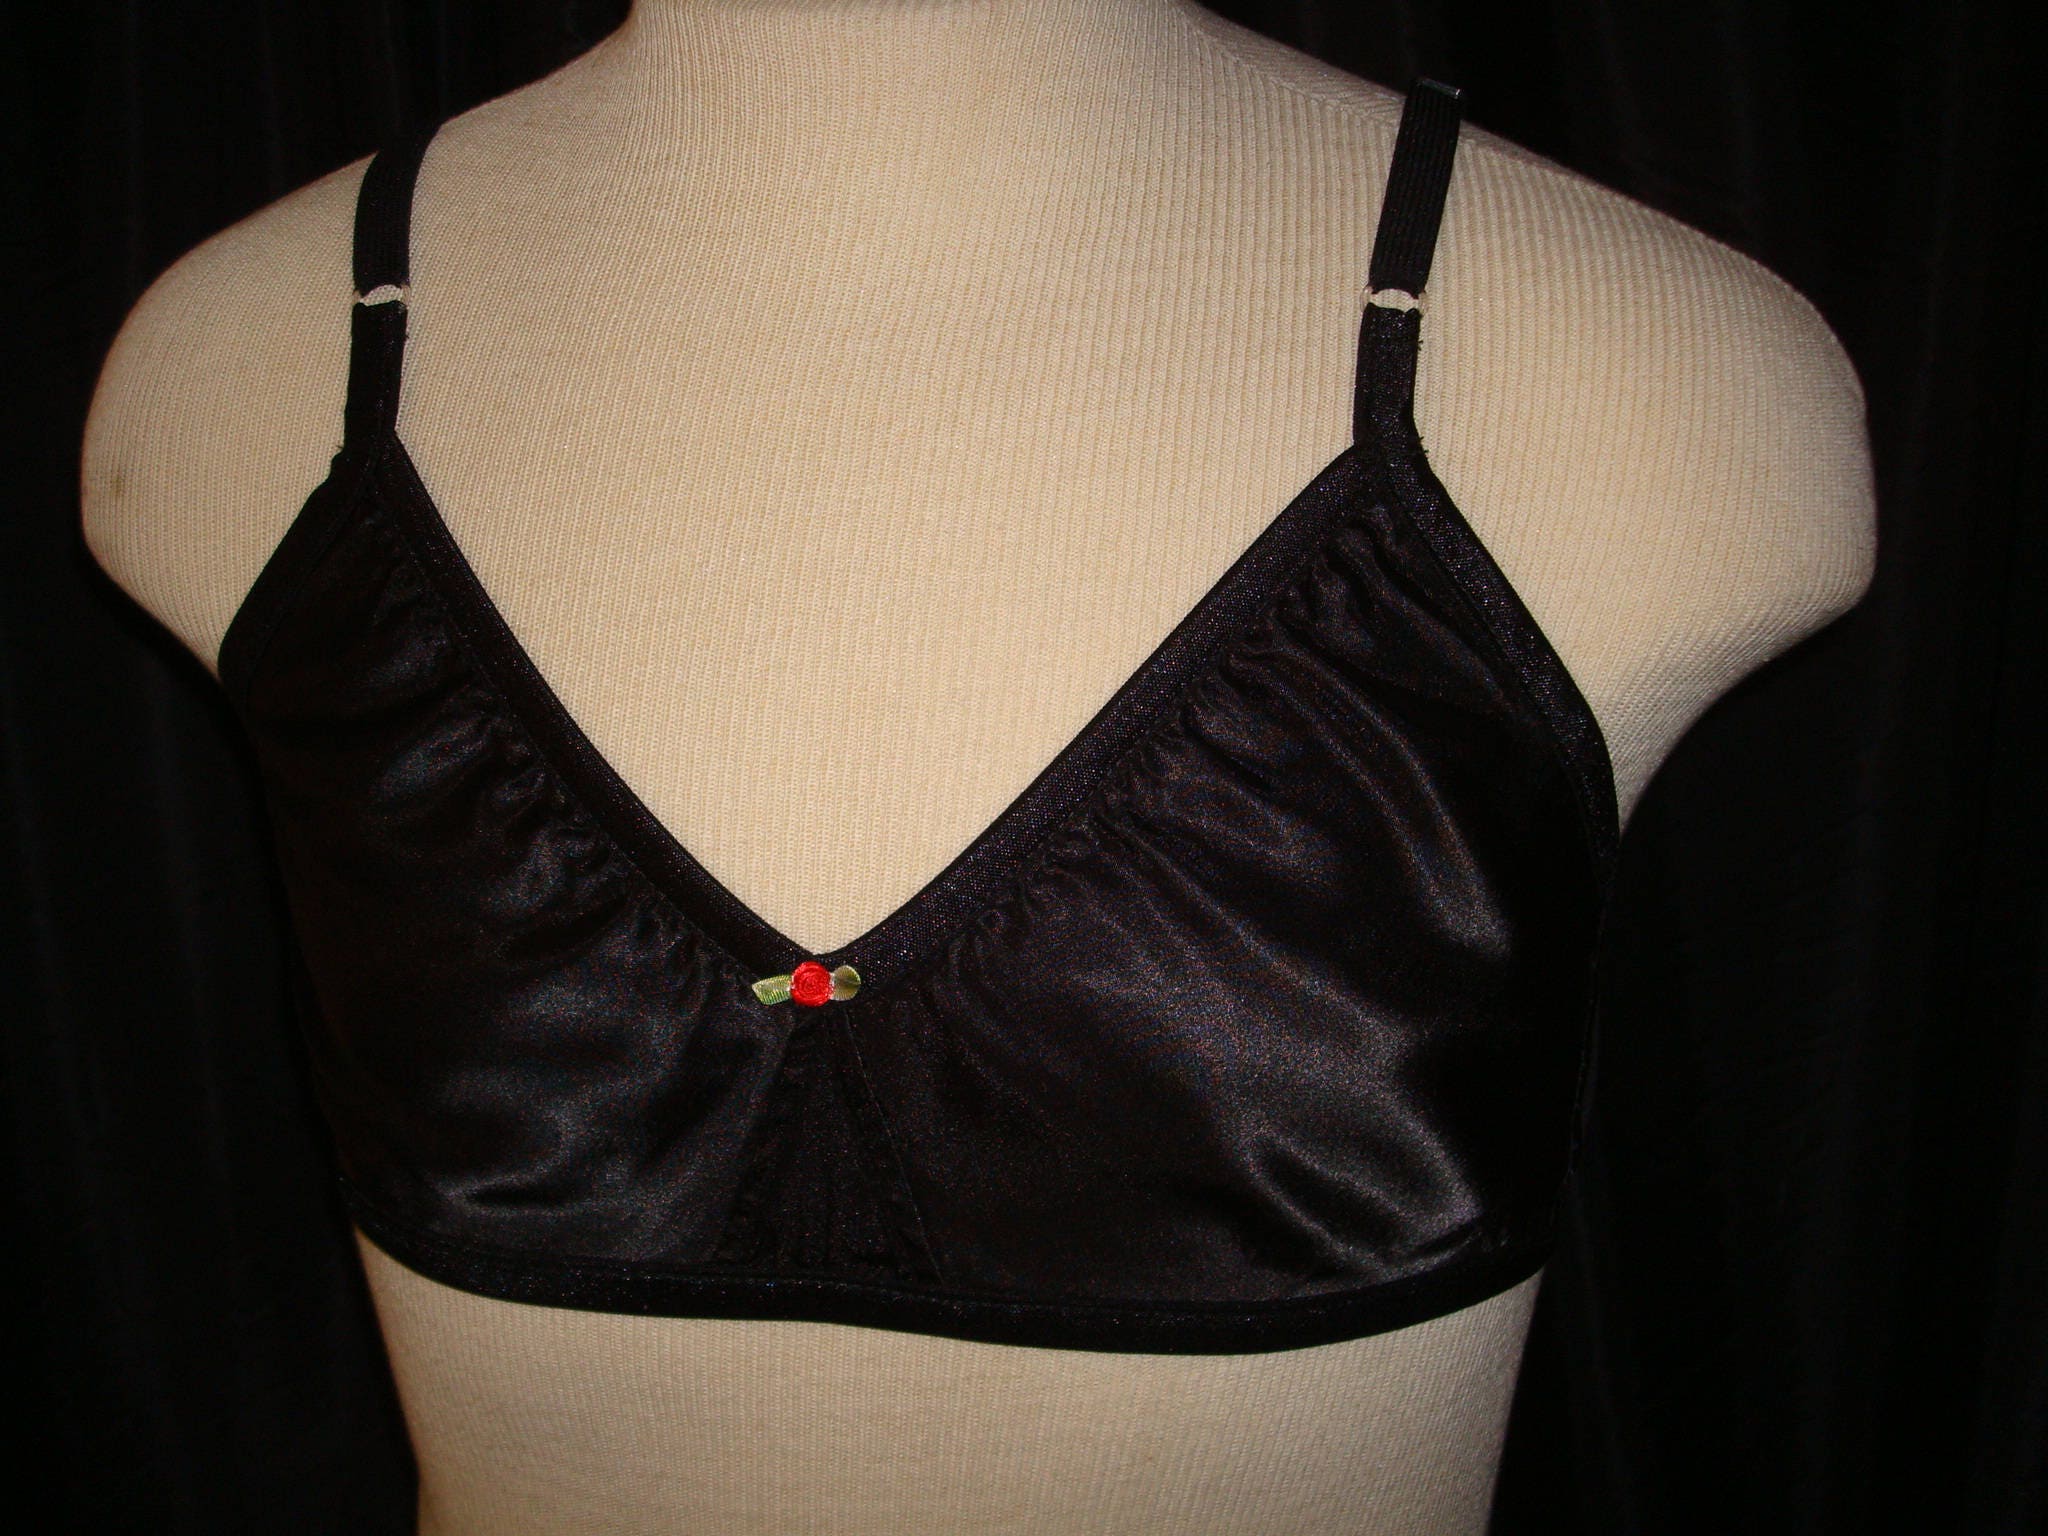 Black Satin Bra for Men - Sissy Training bra Custom made to order -  Crossdresser - Cosplay